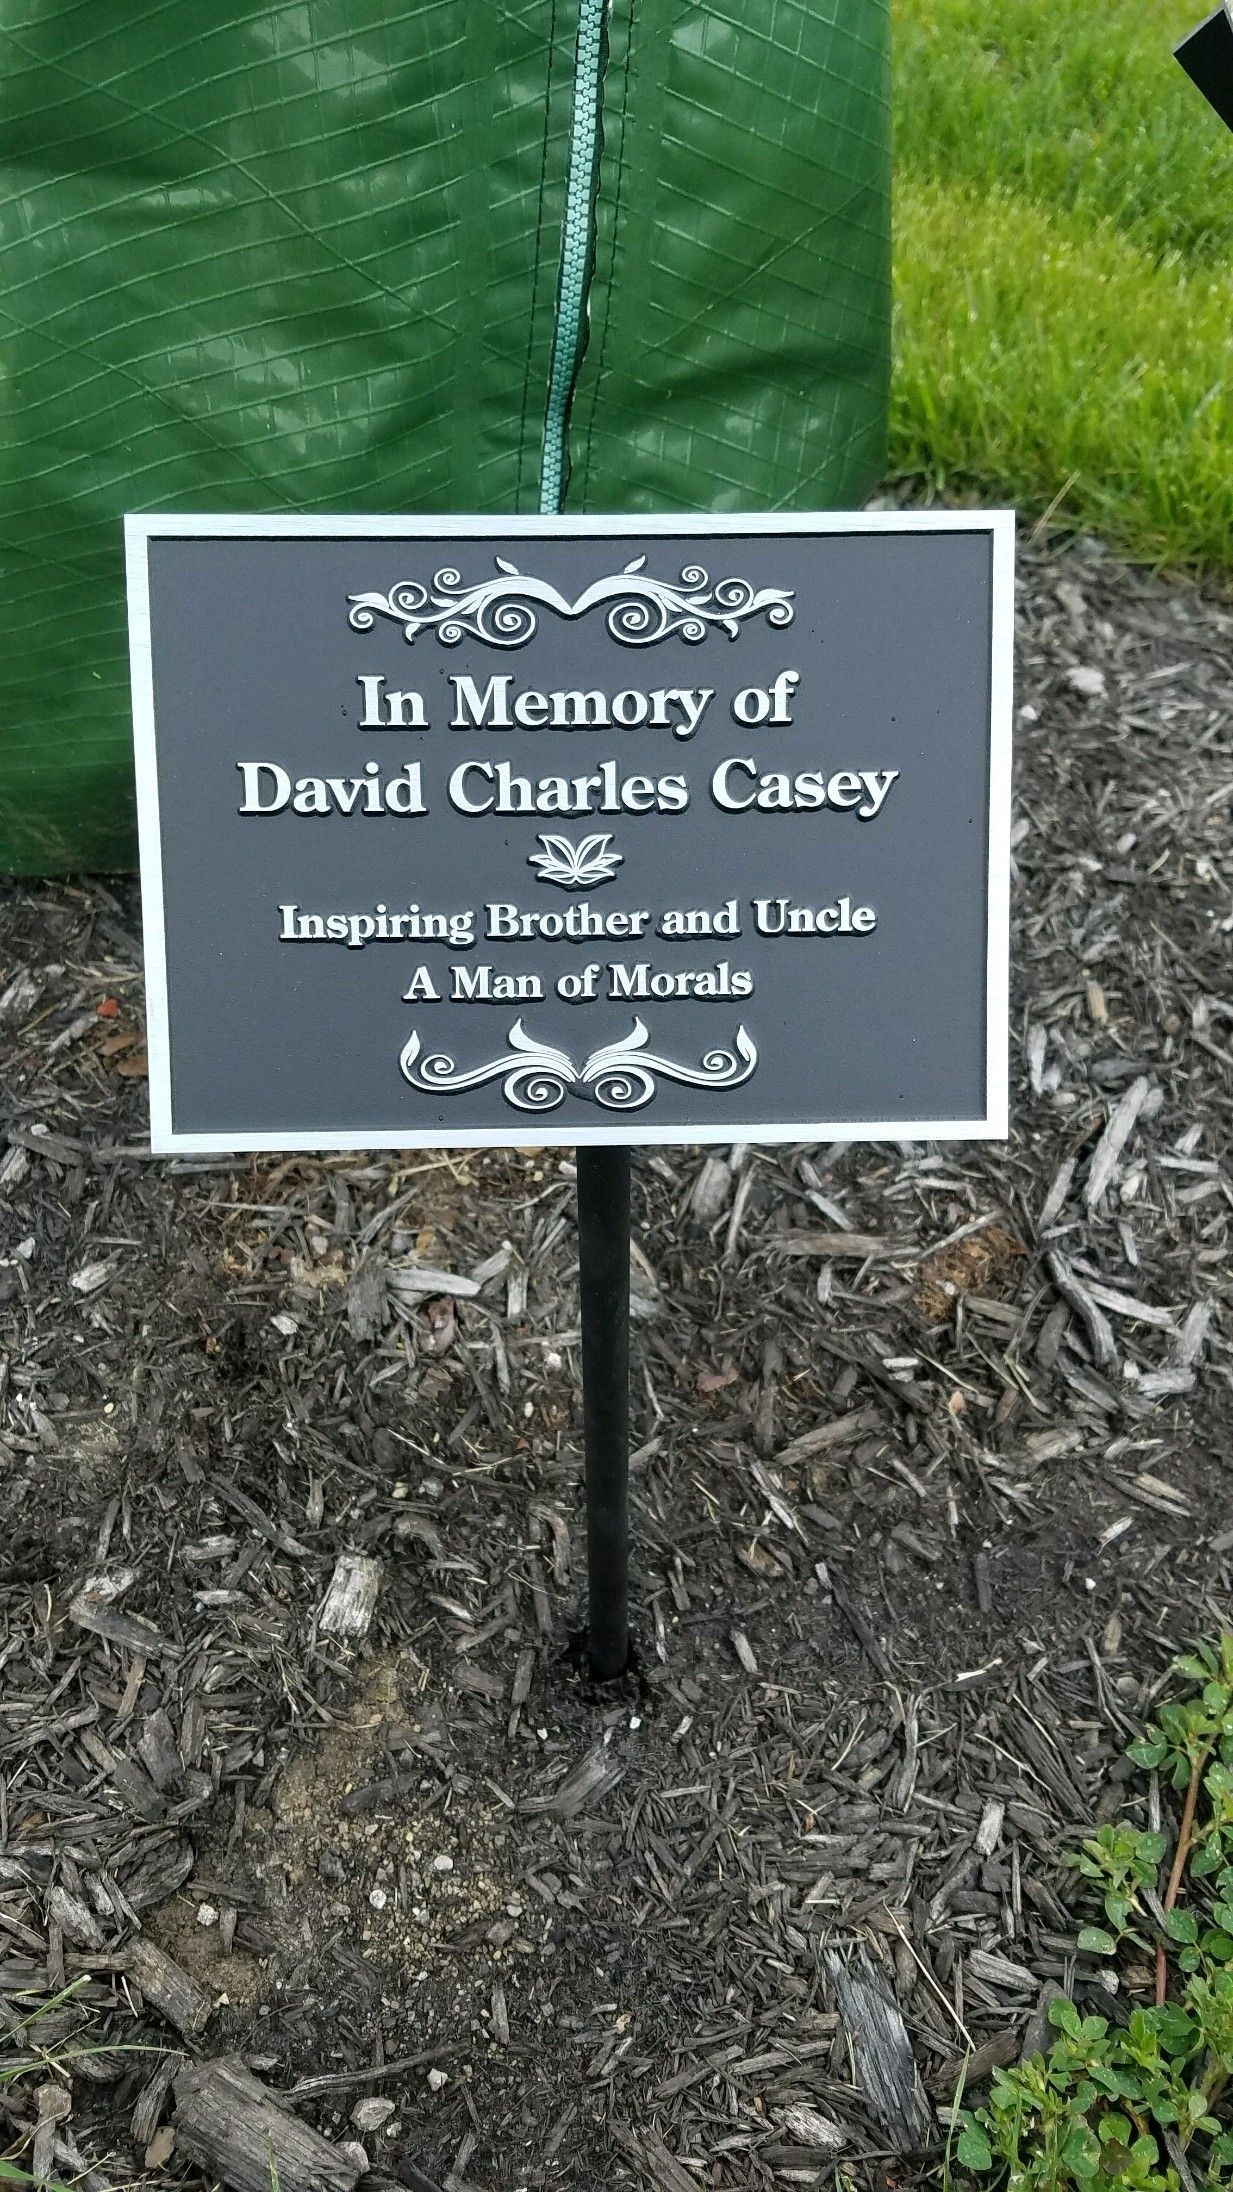 Memorial garden plaques